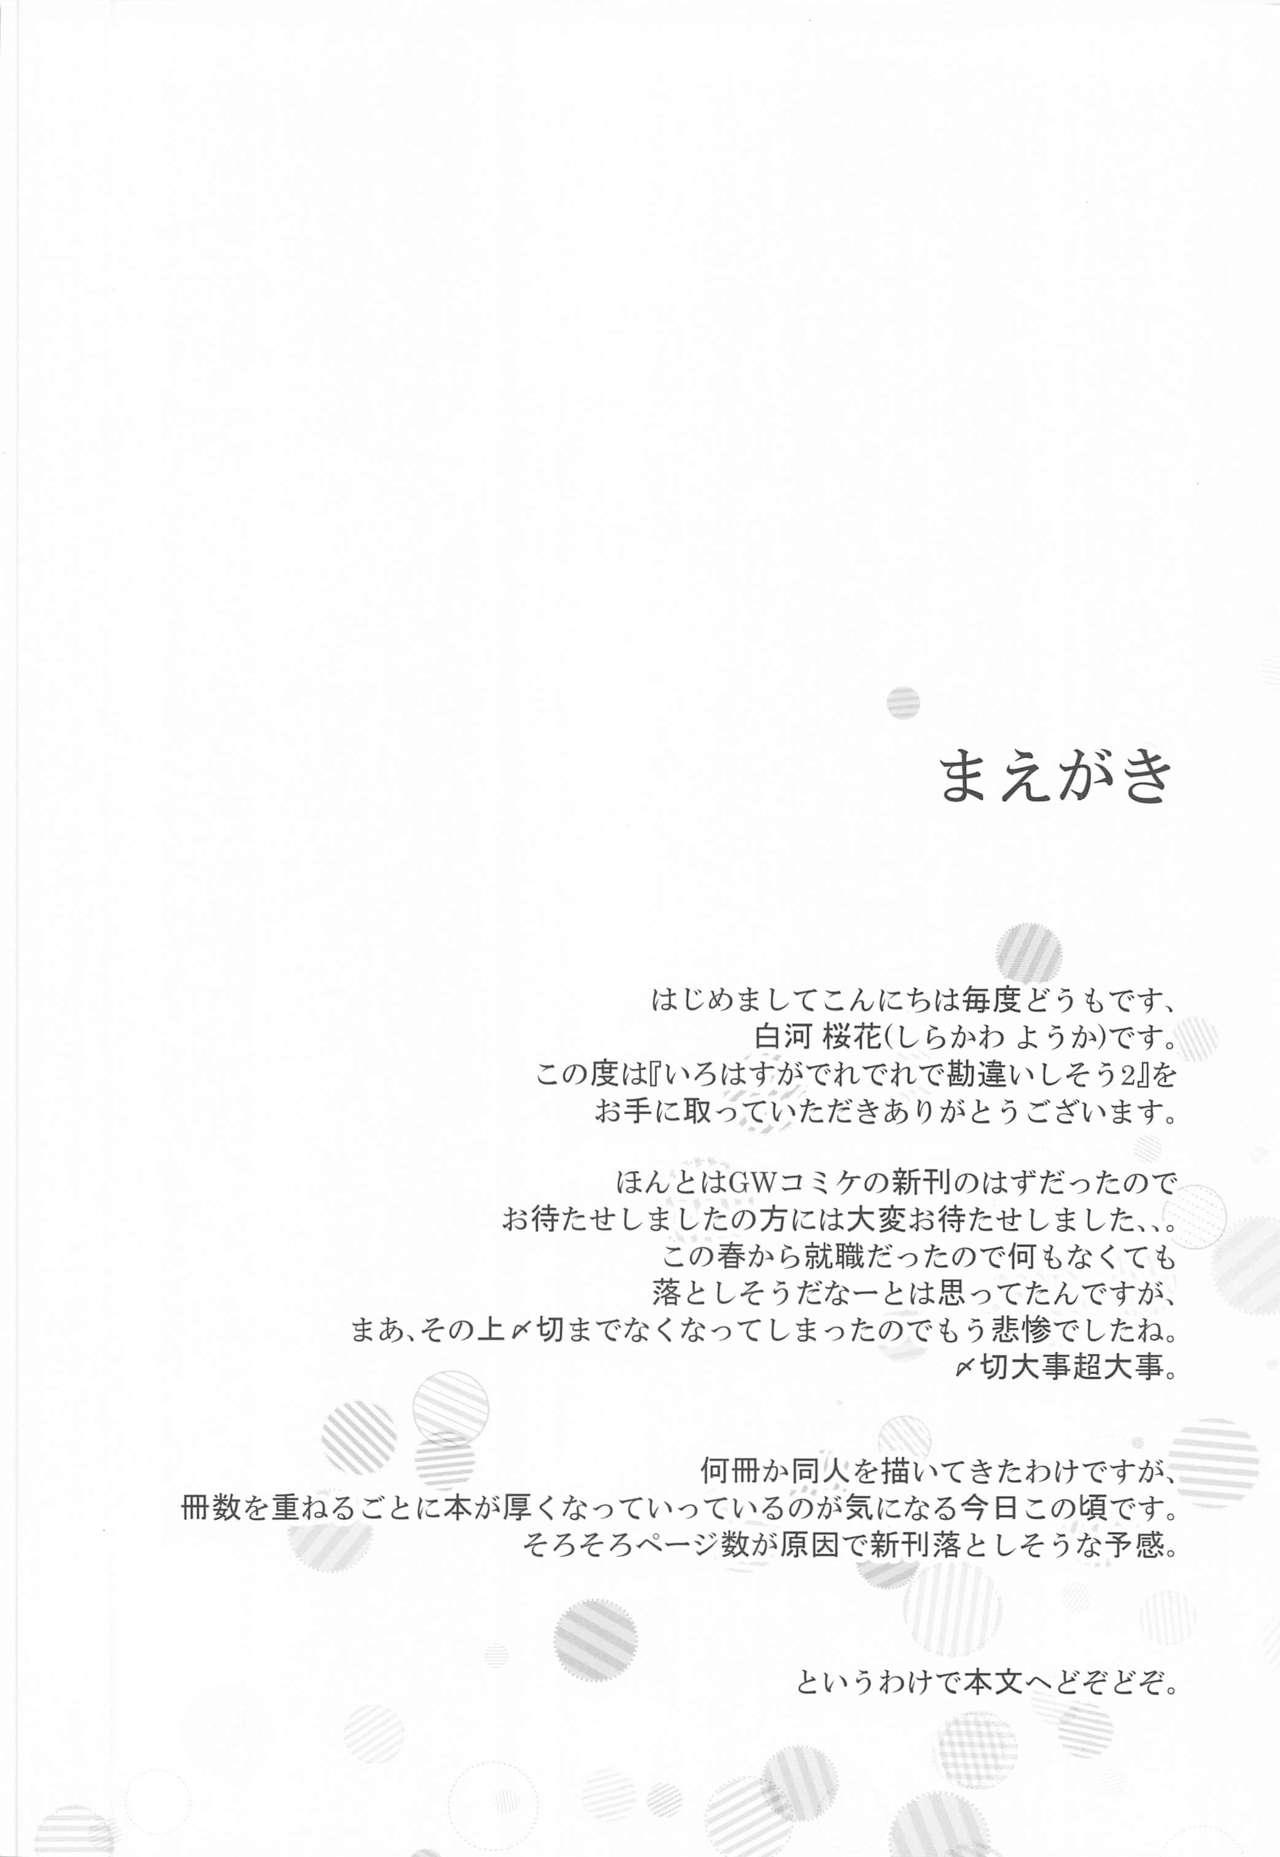 Harcore Irohasu ga Deredere de Kanchigai Shisou 2 - Yahari ore no seishun love come wa machigatteiru Big breasts - Page 3